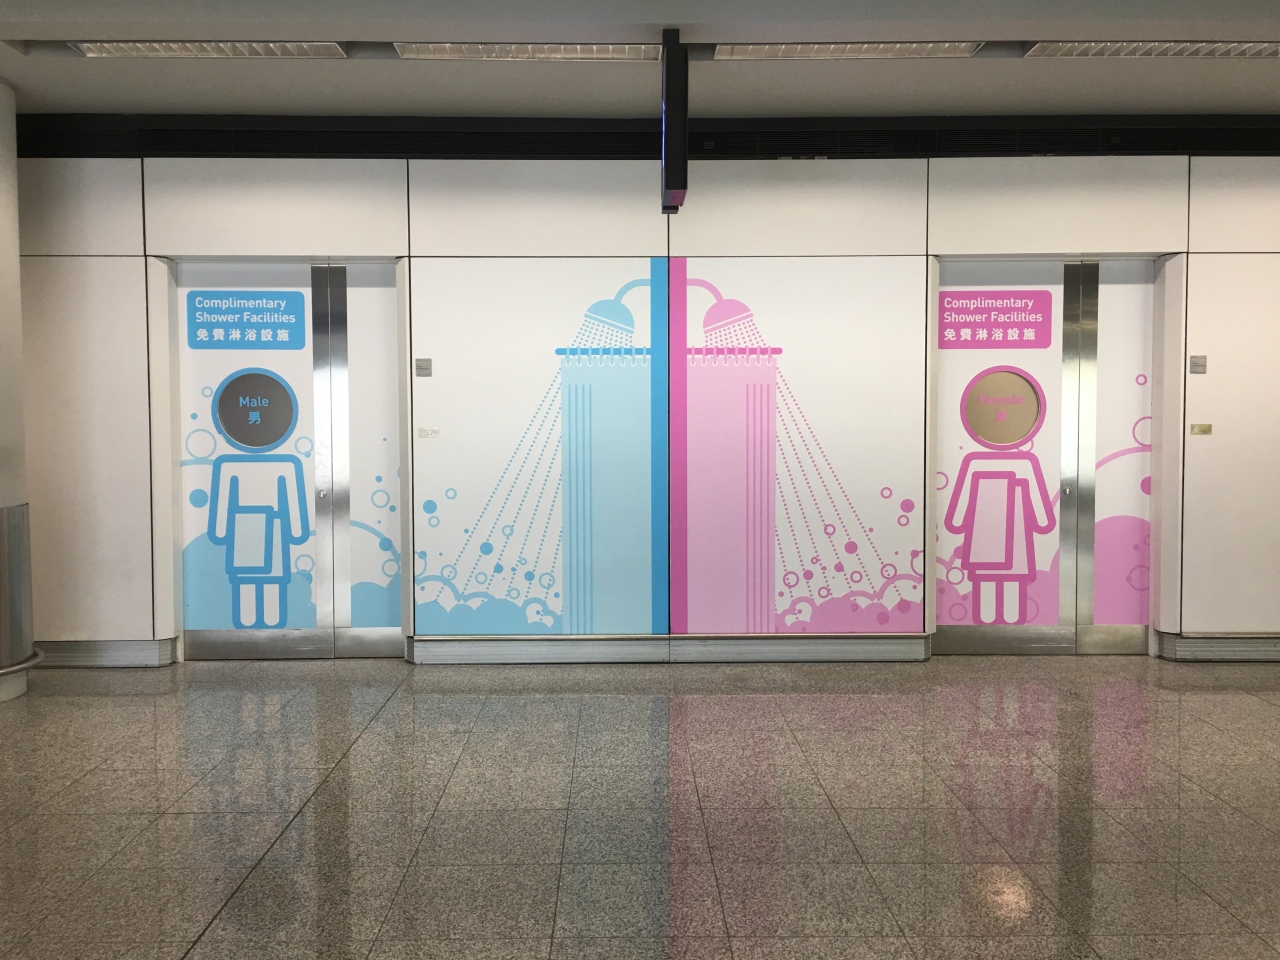 香港 手ぶらでもok 香港国際空港到着階にある無料シャワールームが清潔で便利 香港 香港 の旅行記 ブログ By 立駐ヒルクライマーさん フォートラベル